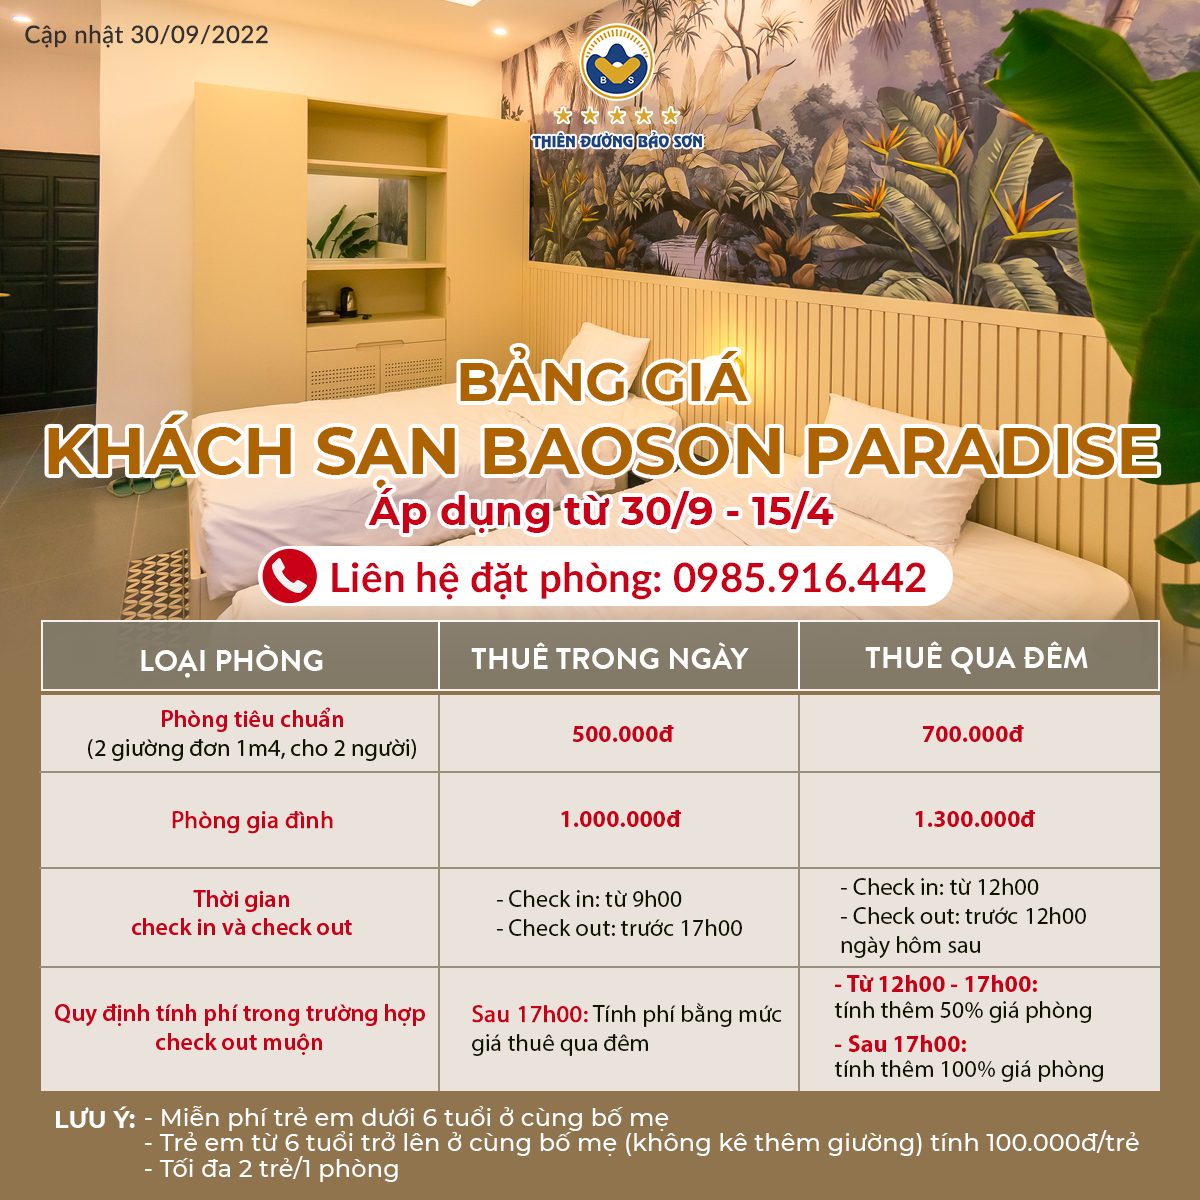 Bảng giá khách sạn Baoson Paradise